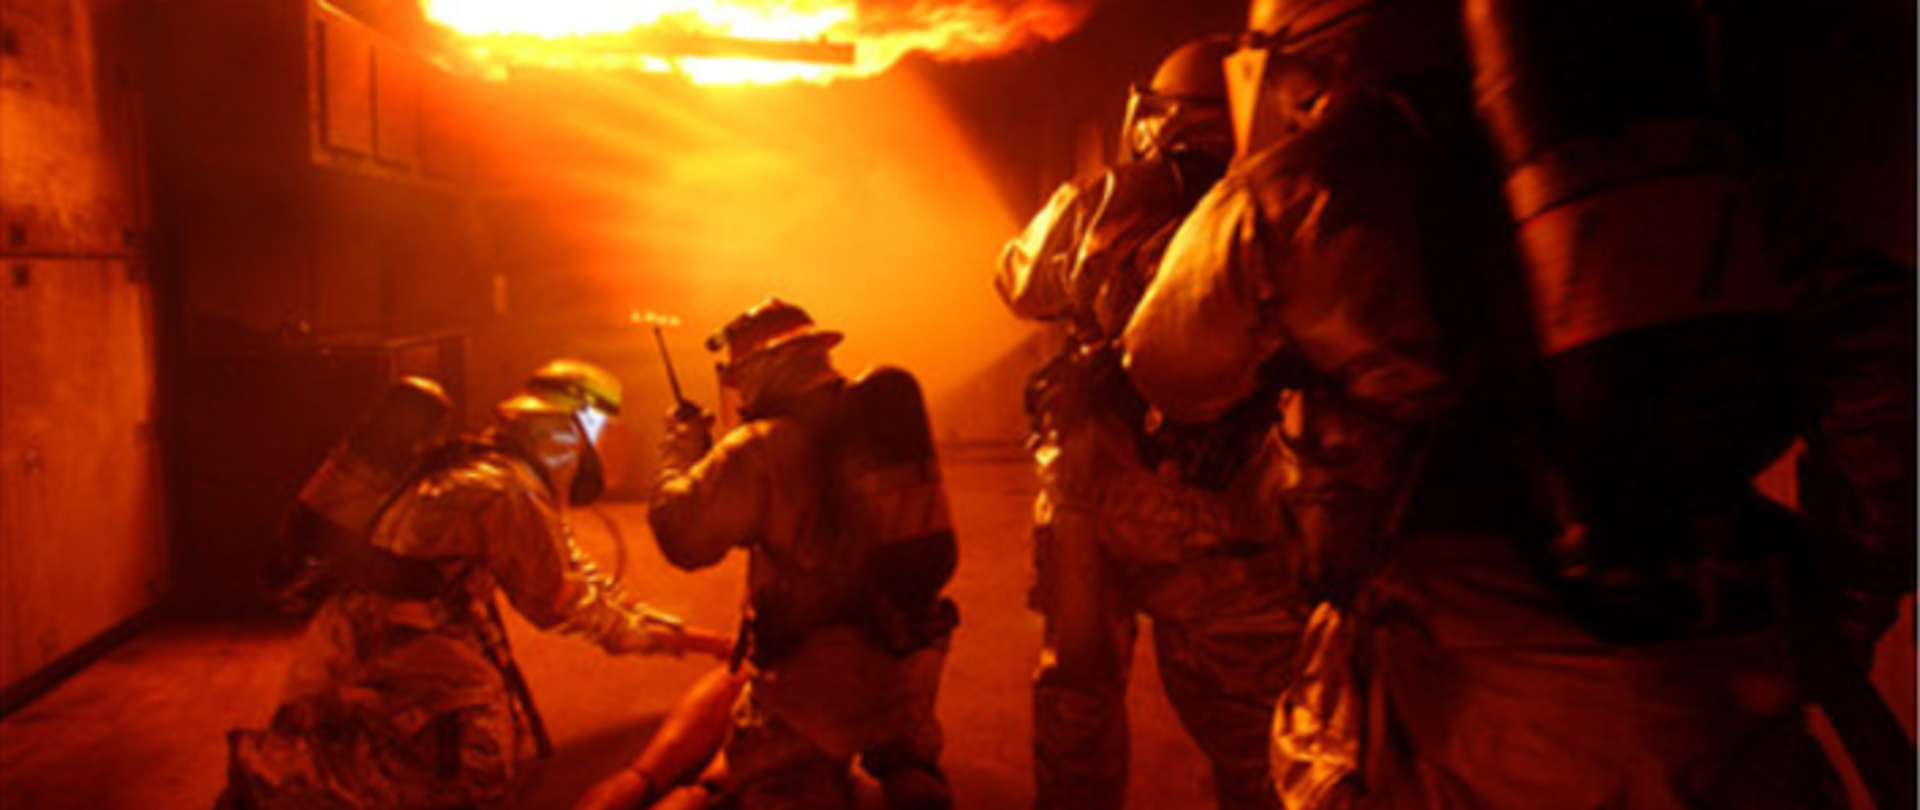 Zdjęcie przedstawia czterech strażaków podczas ćwiczeń praktycznych w zakresie działań gaśniczych oraz ewakuacji osoby poszkodowanej